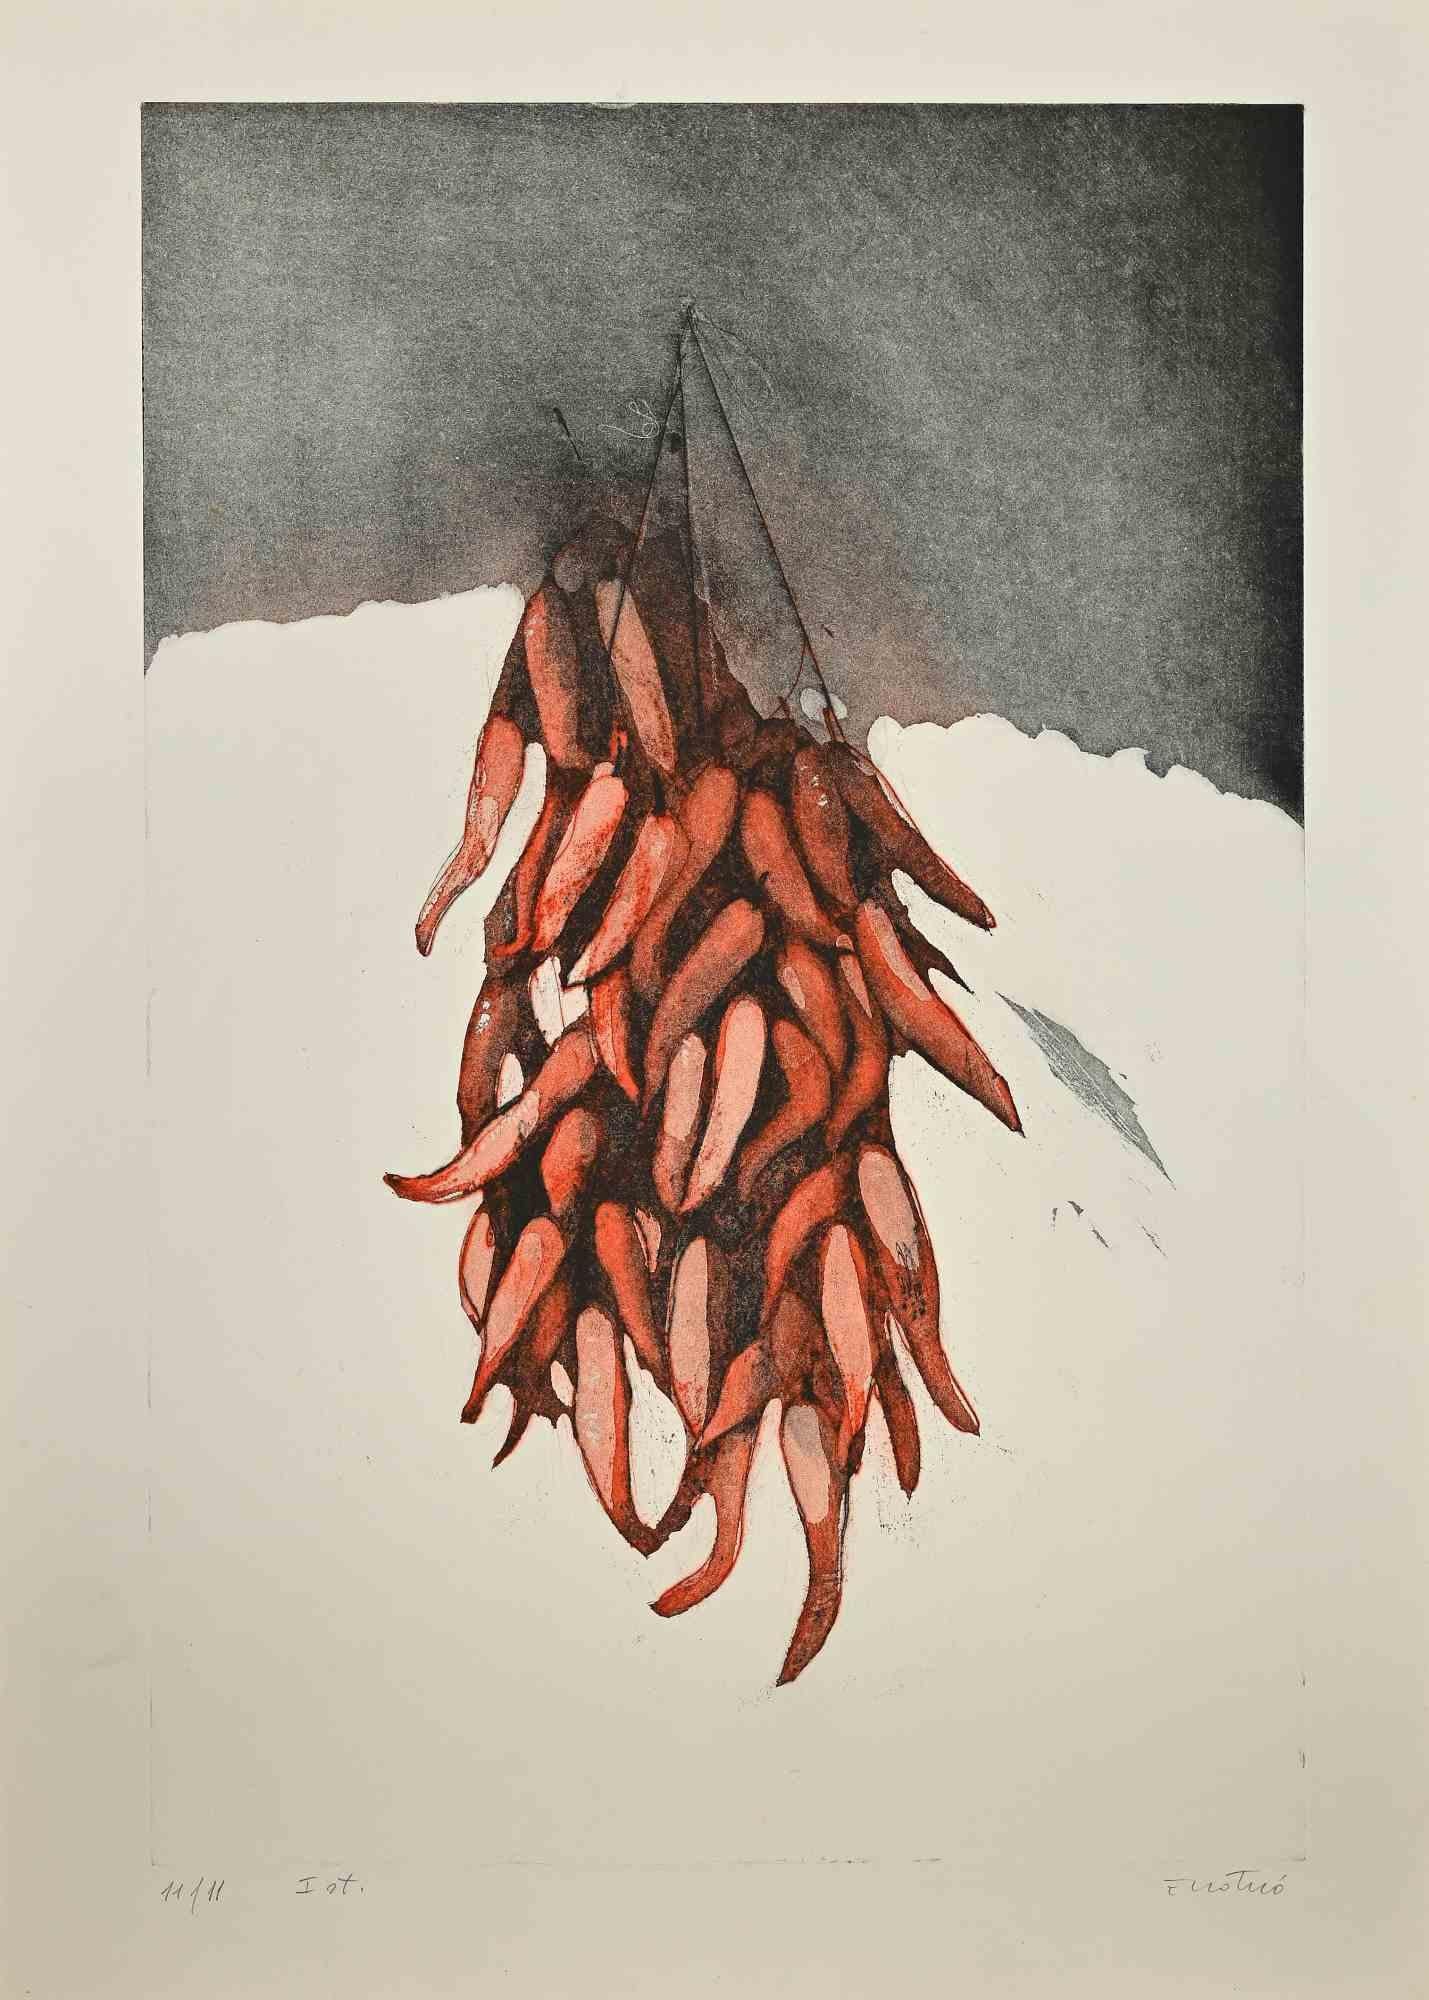 Stillleben mit roter Paprika ist eine Radierung von Enotrio Pugliese aus den 1960er Jahren.

Handsigniert vom Künstler auf der Unterseite.

Nummerierte, limitierte Auflage von 11/11 Exemplaren.

Gute Bedingungen.

Enotrio Pugliese (11. Mai 1920 -